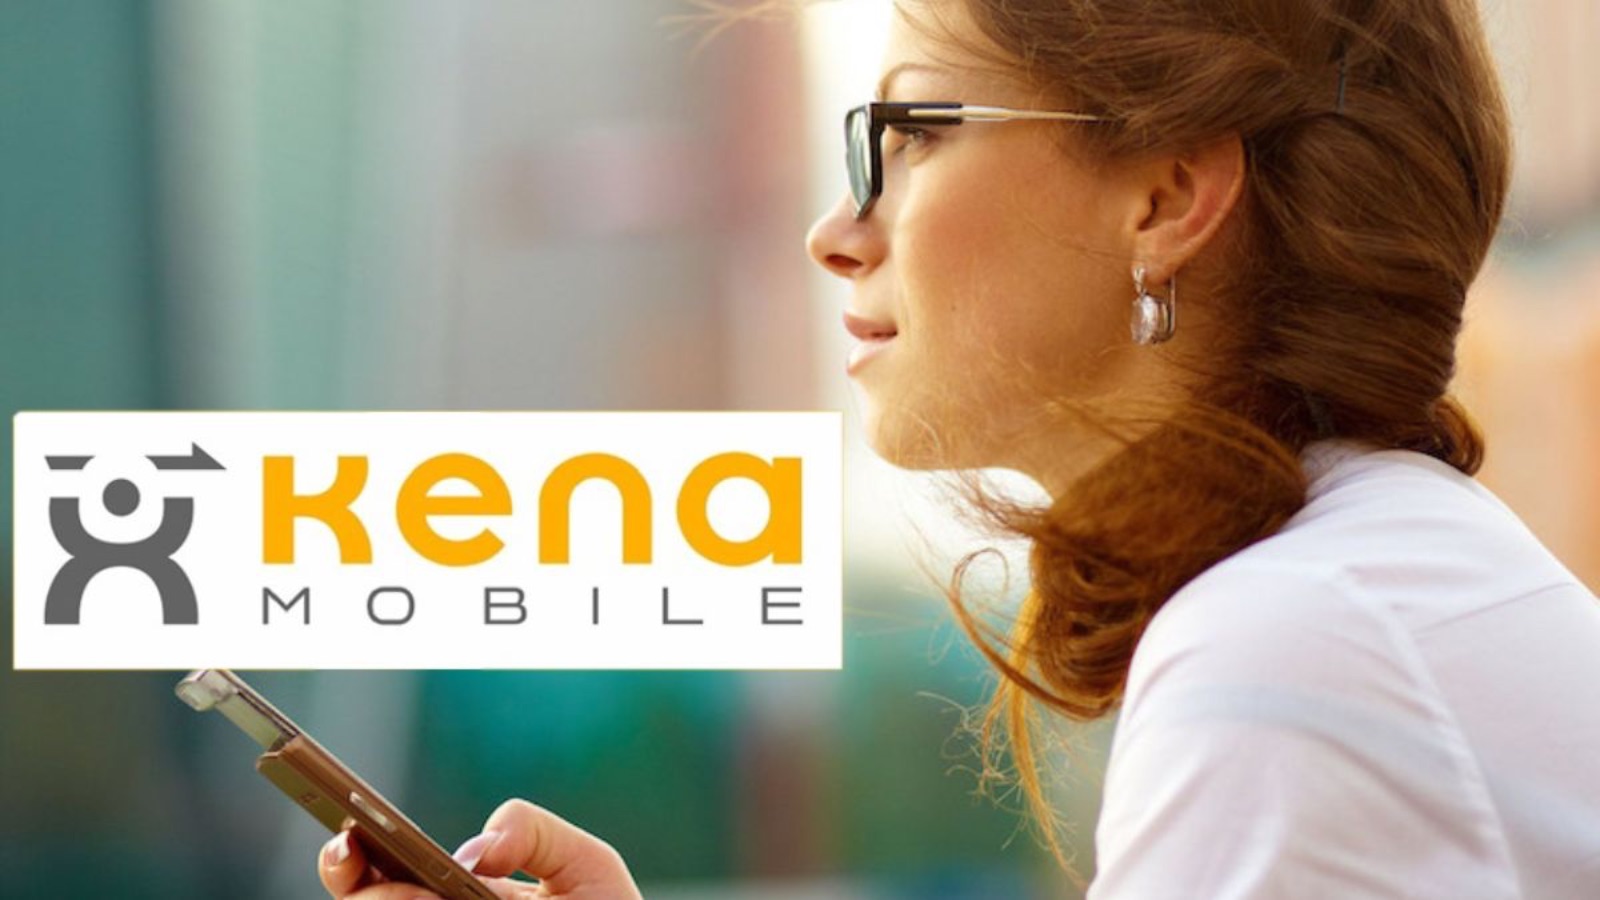 Kena Mobile, la PROMO TOP 100 costa pochissimo ogni mese